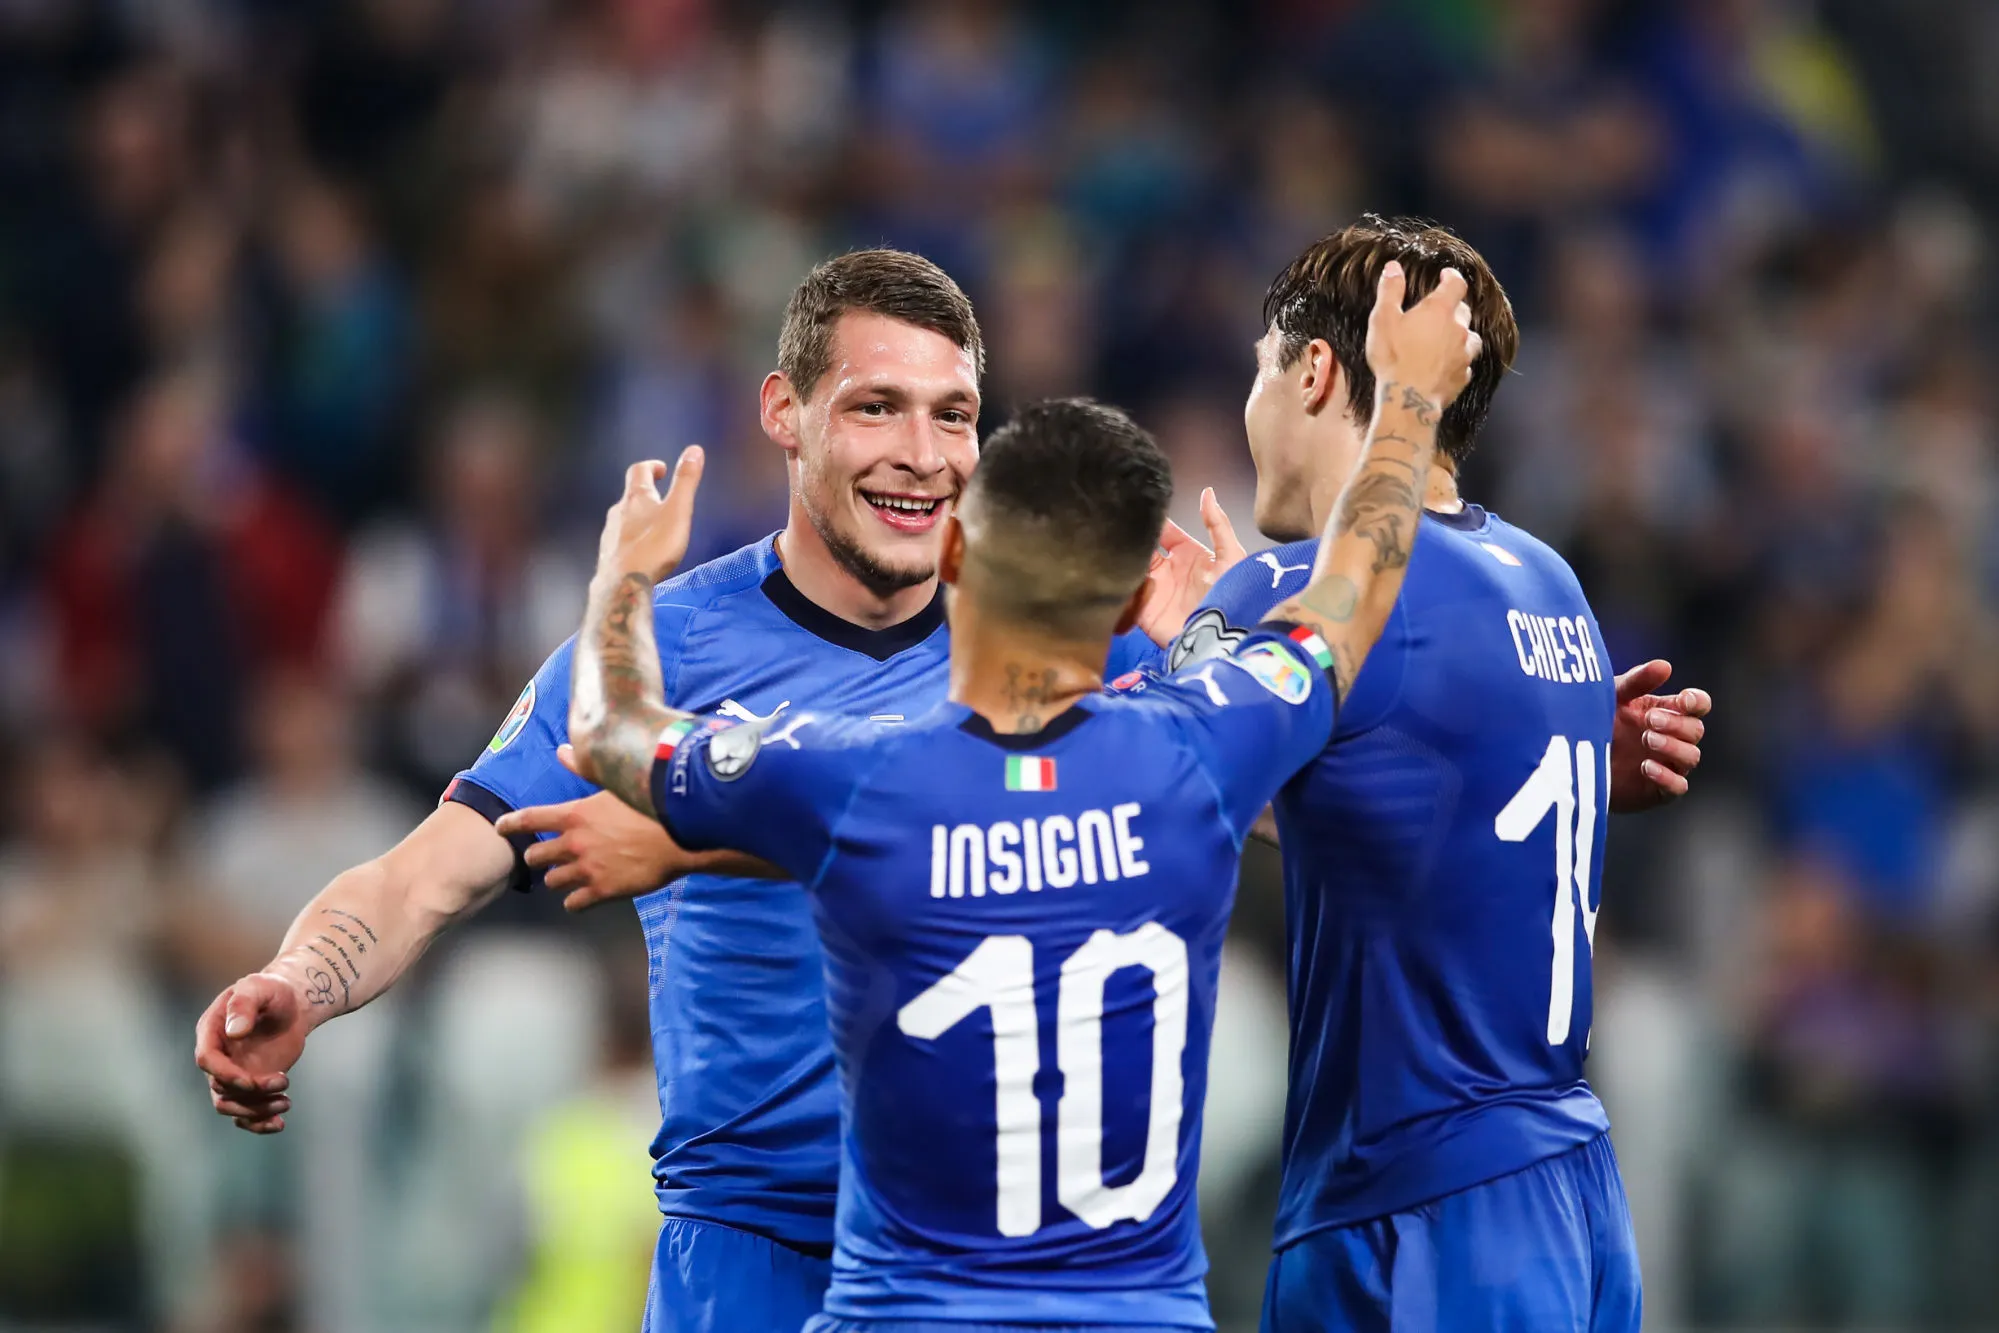 Pronostic Italie Pays-Bas : Analyse, cotes et prono du match de Ligue des Nations A